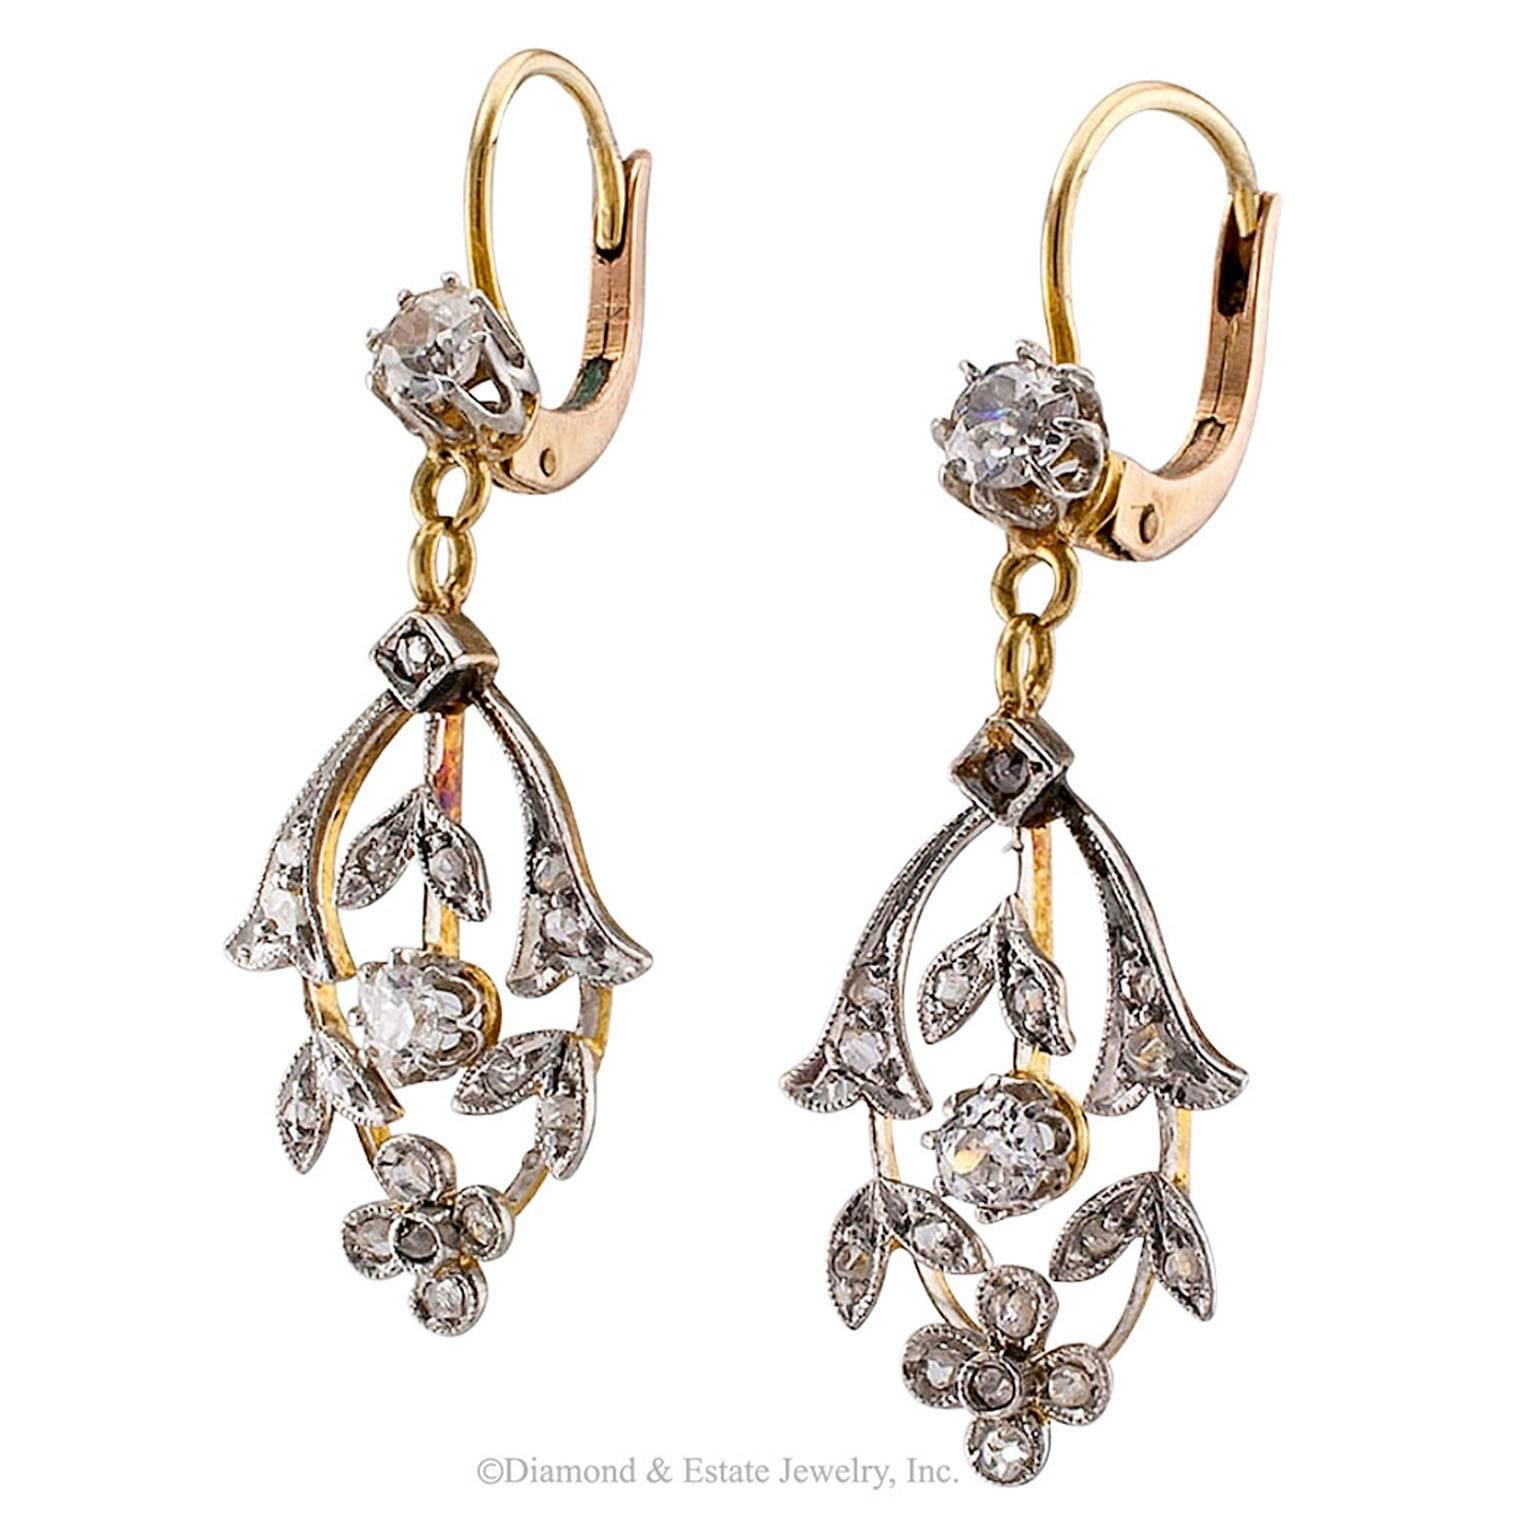 1910 earrings